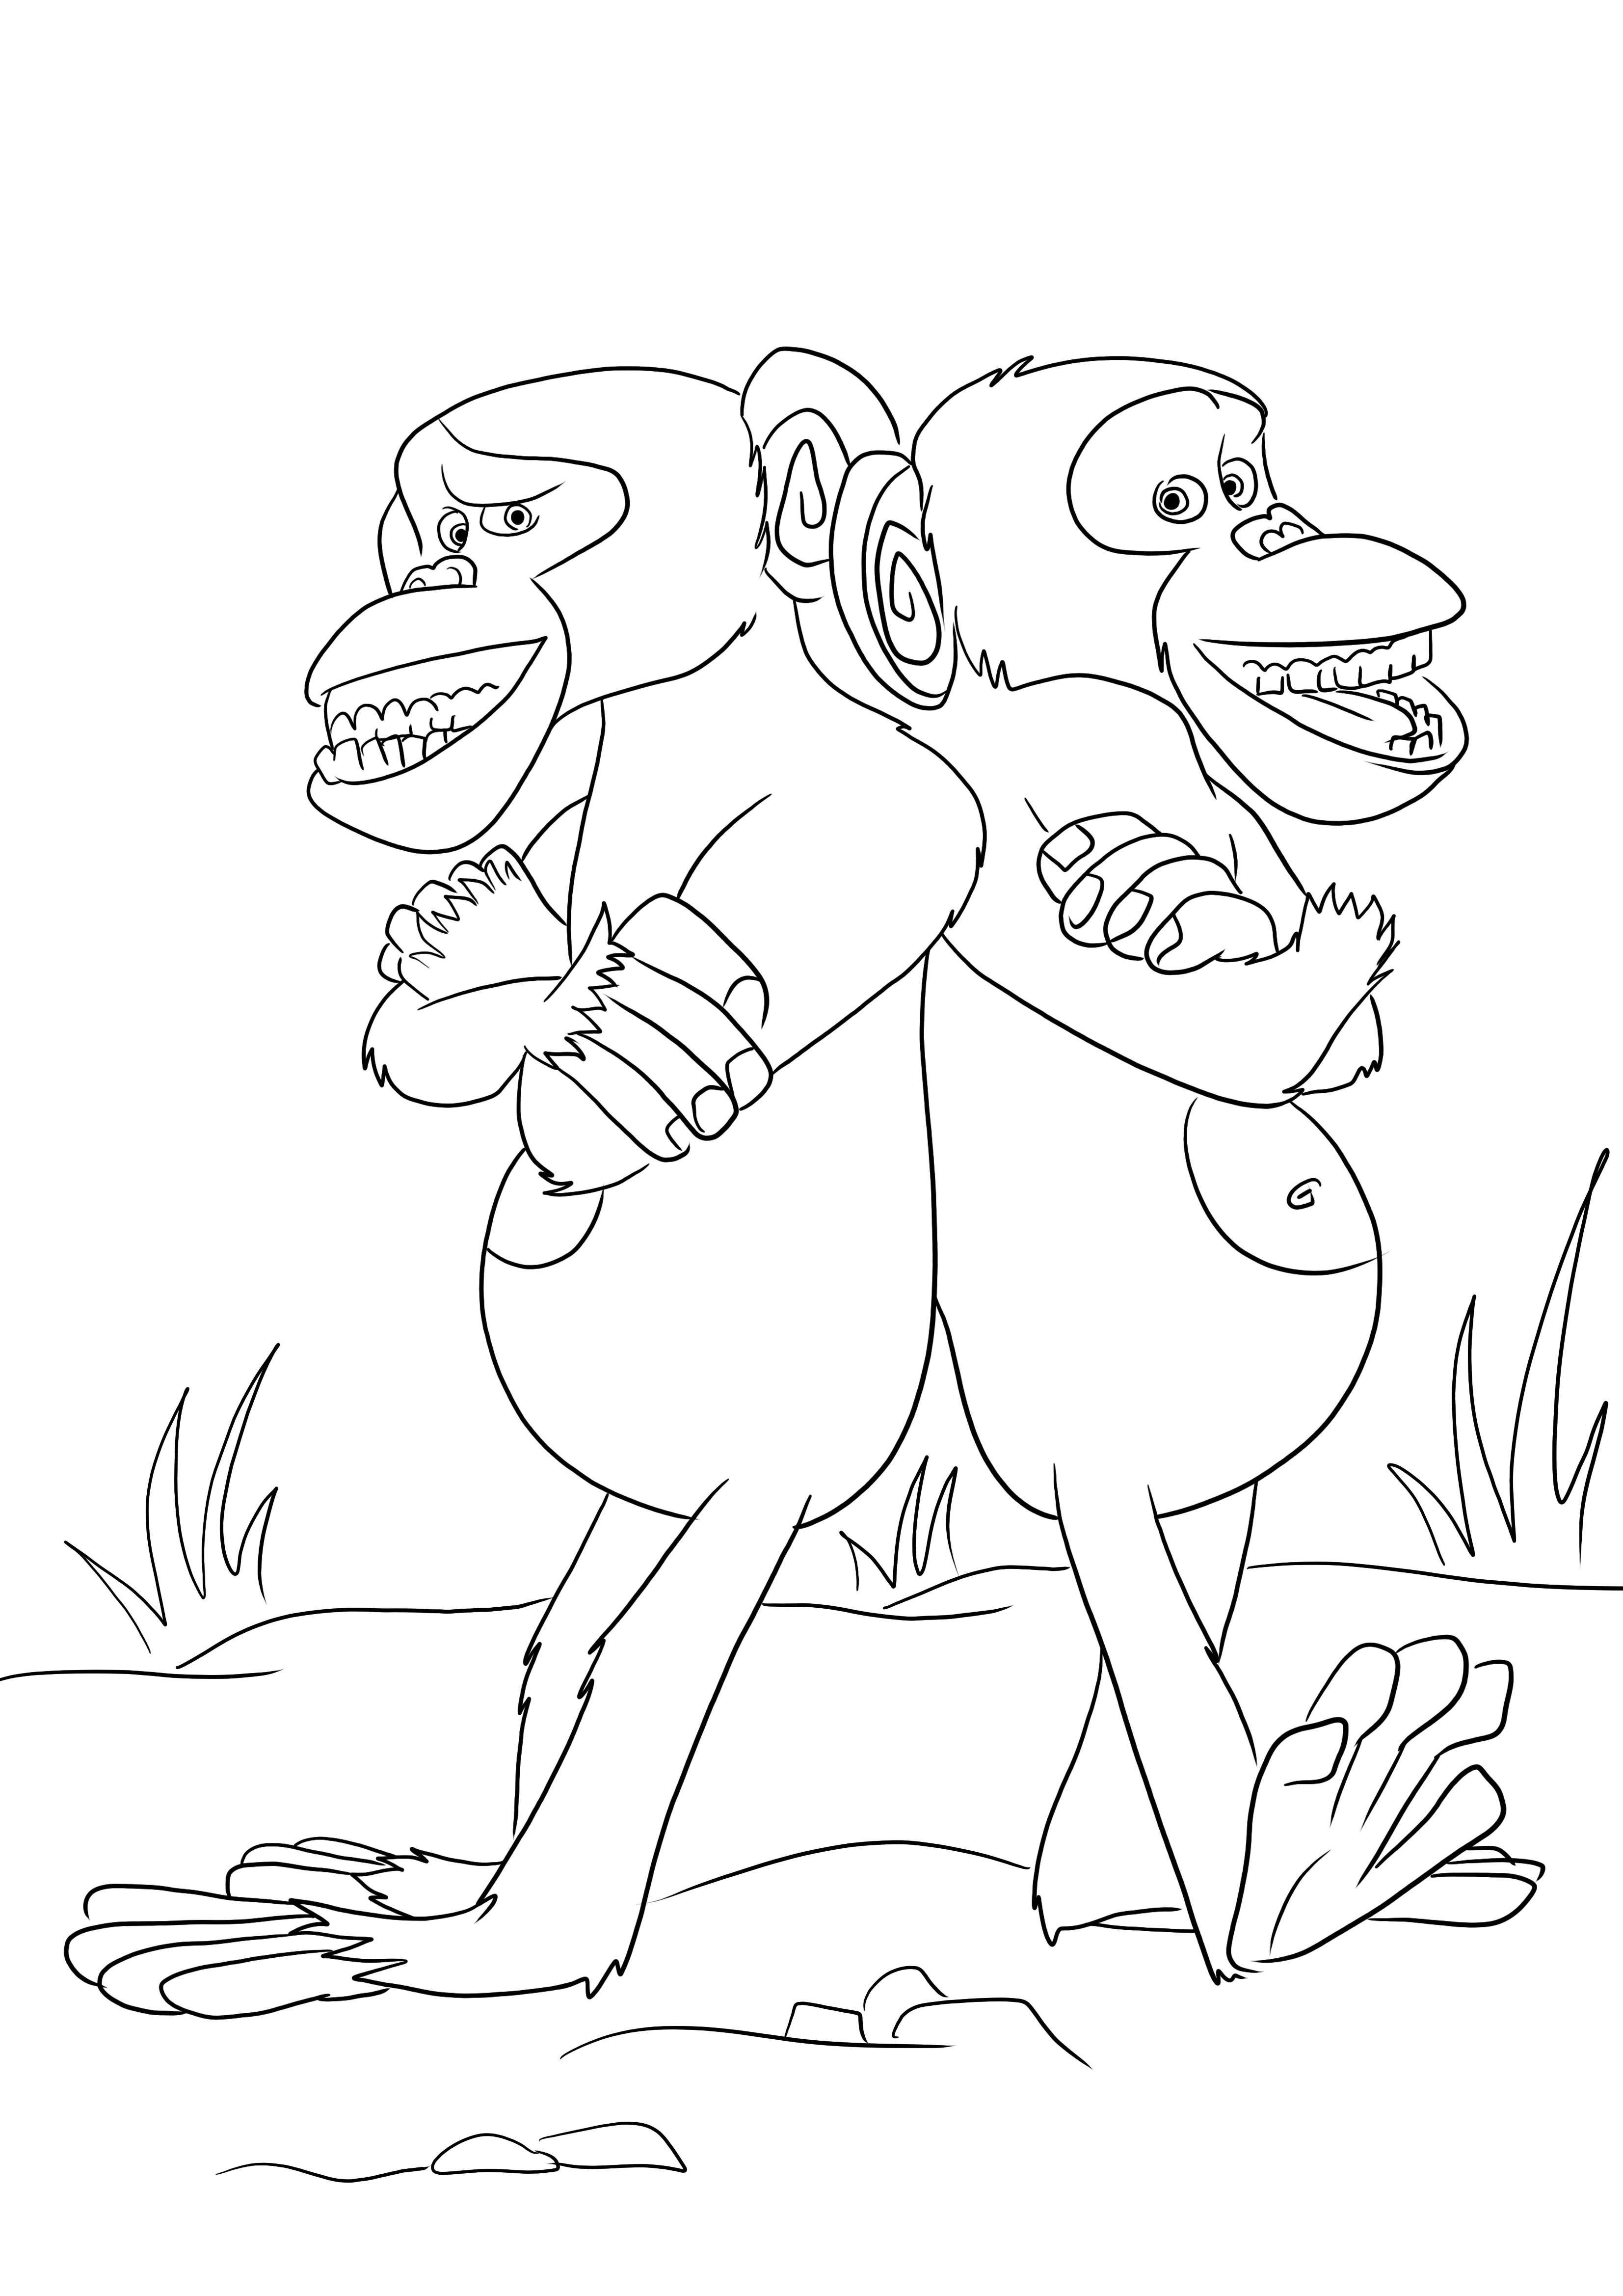 L'immagine da colorare di Mason e Phil, le due simpatiche scimmie, può essere scaricata gratuitamente